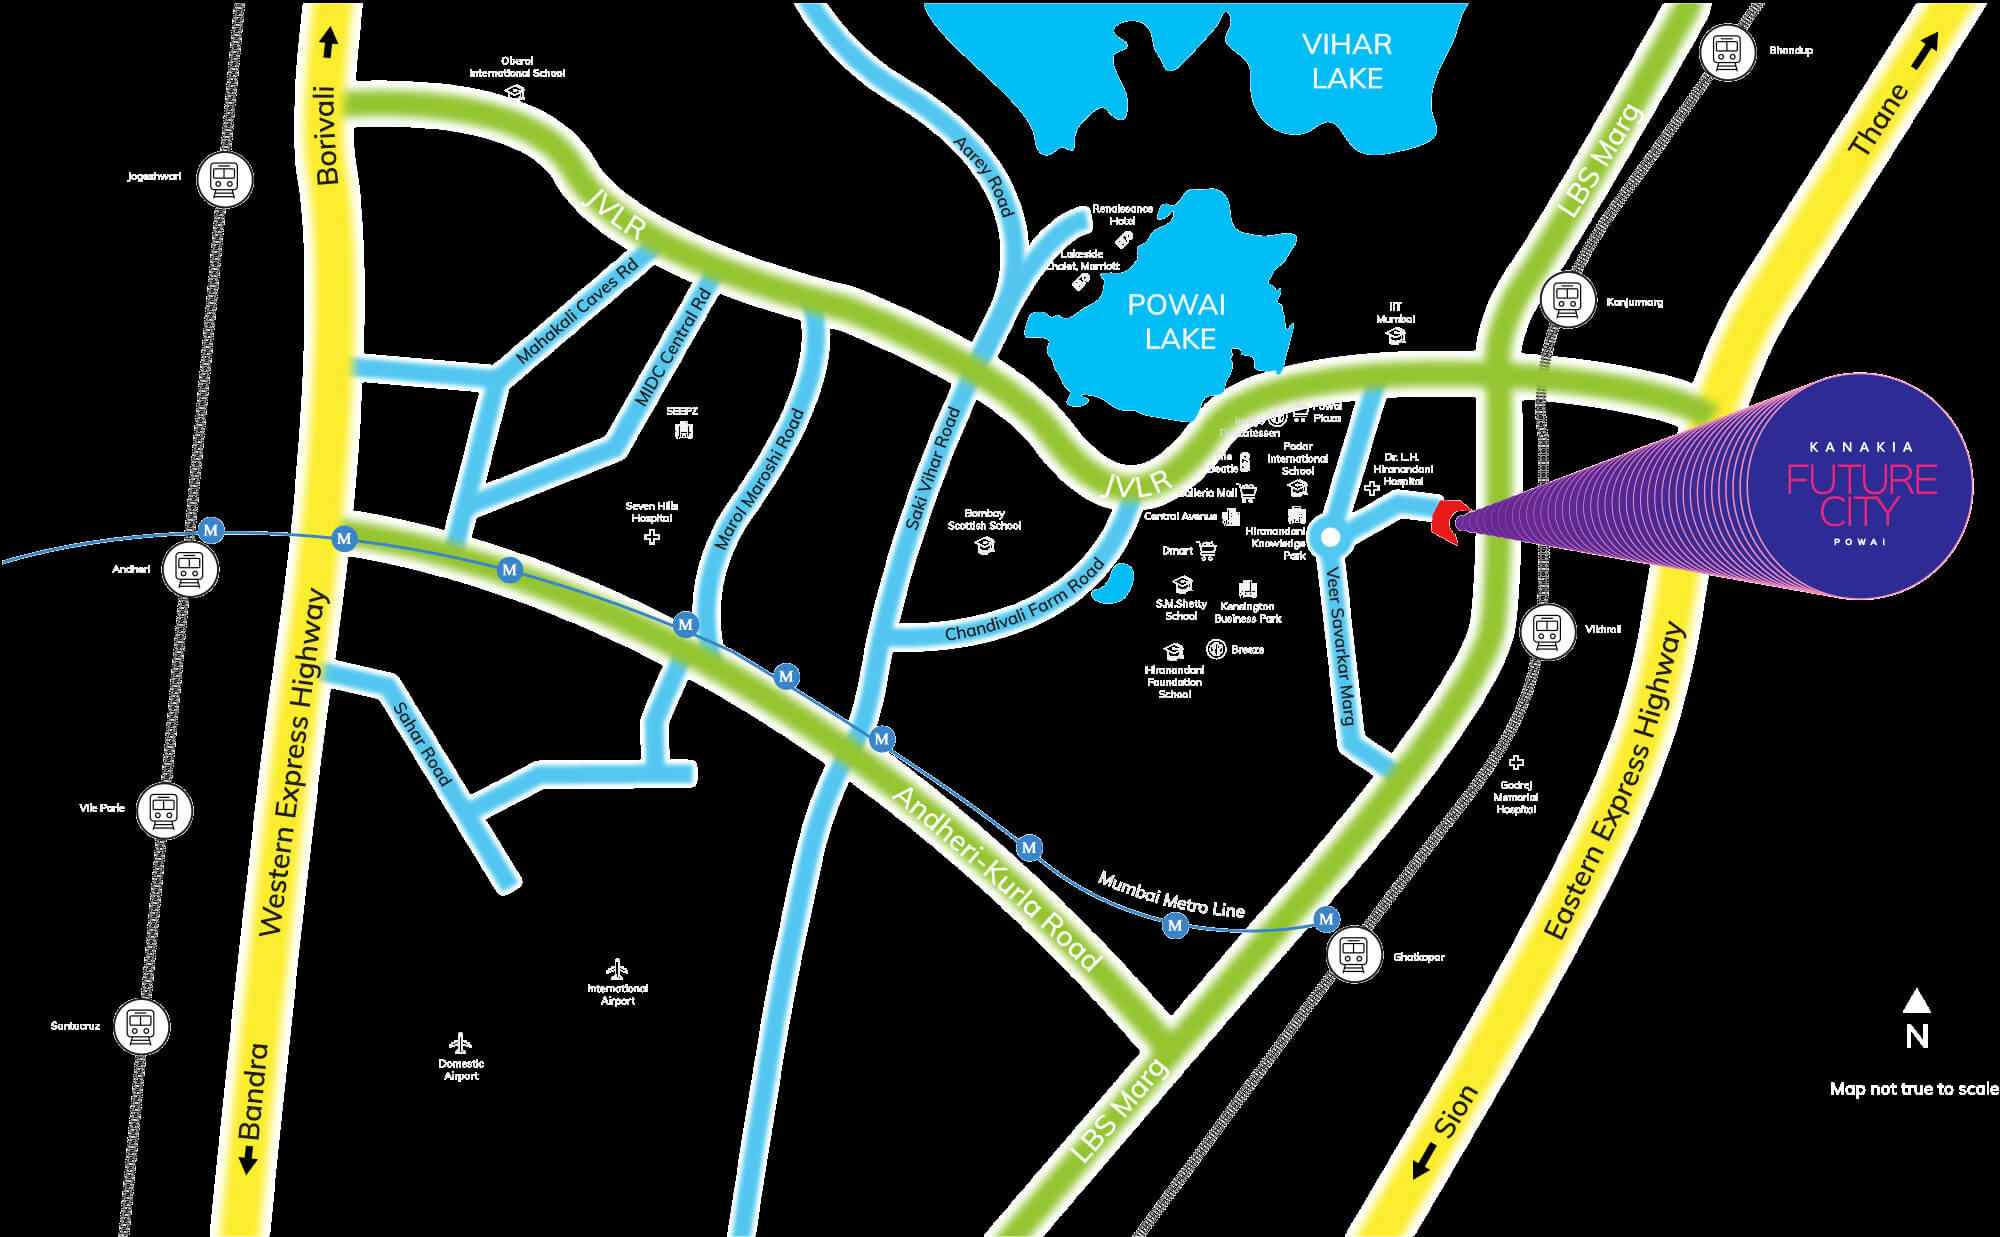 Kanakia Future City Location Map